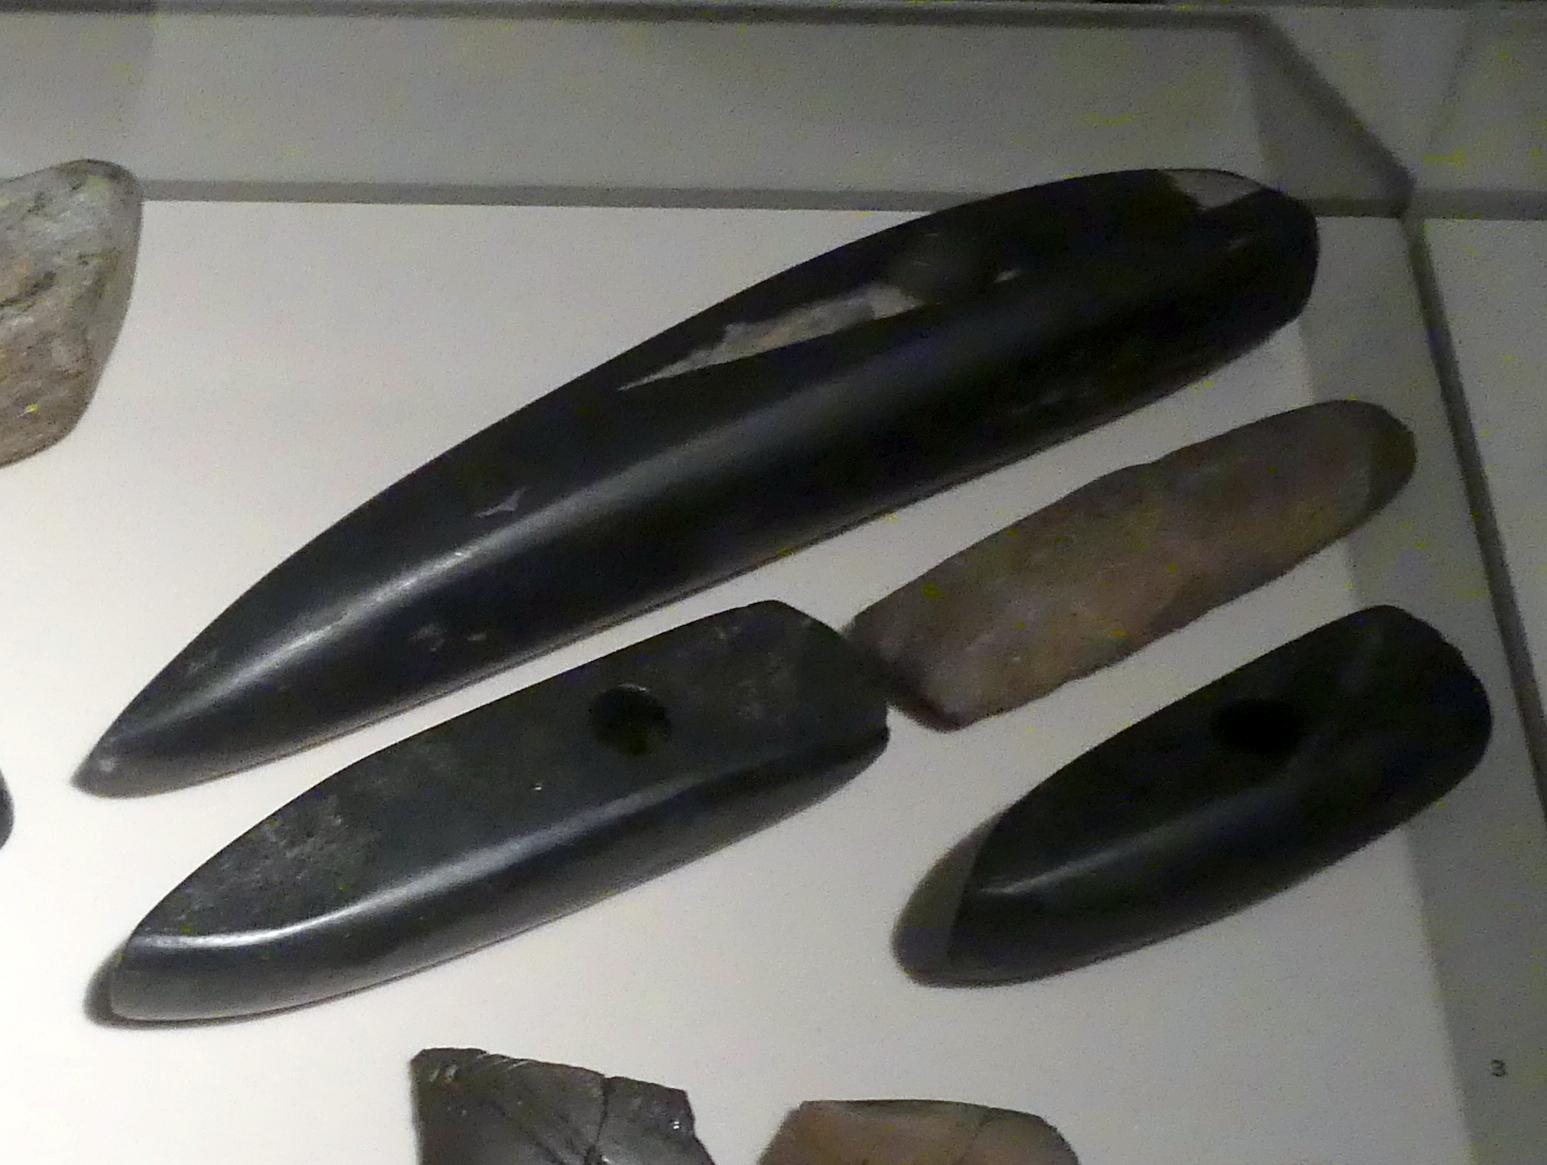 Schuhleistenkeile, Frühneolithikum (Altneolithikum), 5500 - 4900 v. Chr., 5500 - 5000 v. Chr.